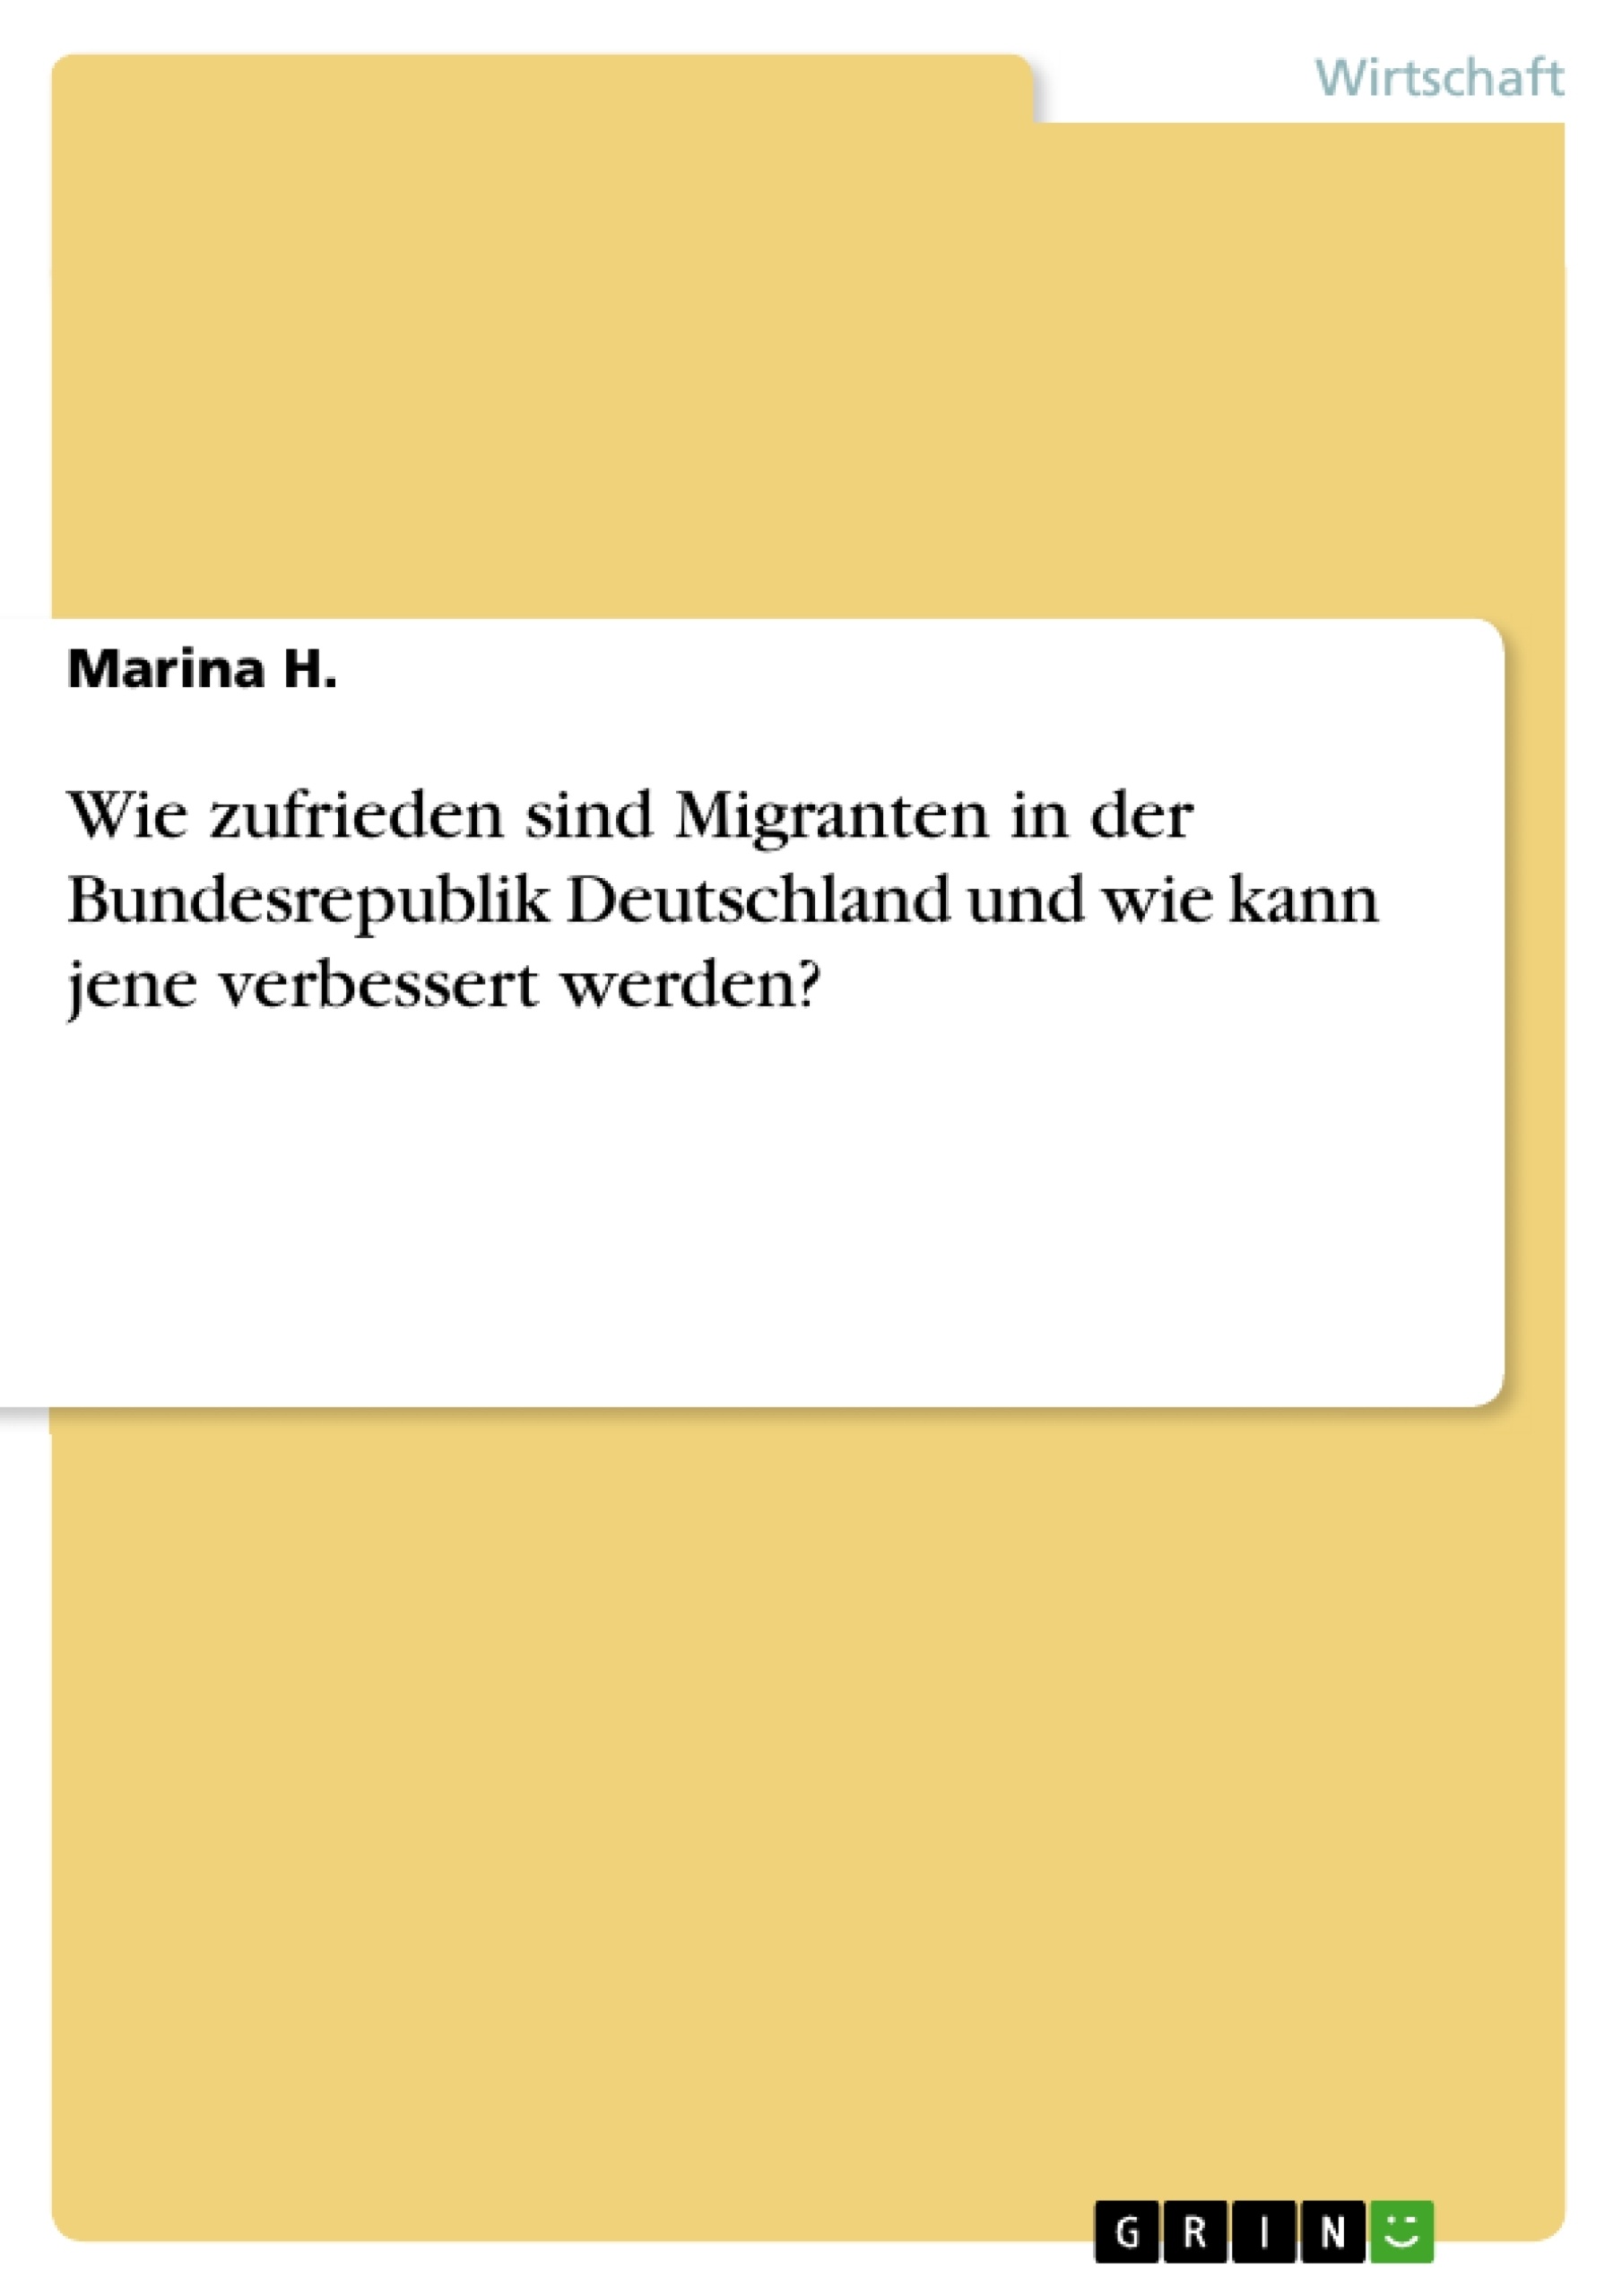 Titre: Wie zufrieden sind Migranten in der Bundesrepublik Deutschland und wie kann jene verbessert werden?